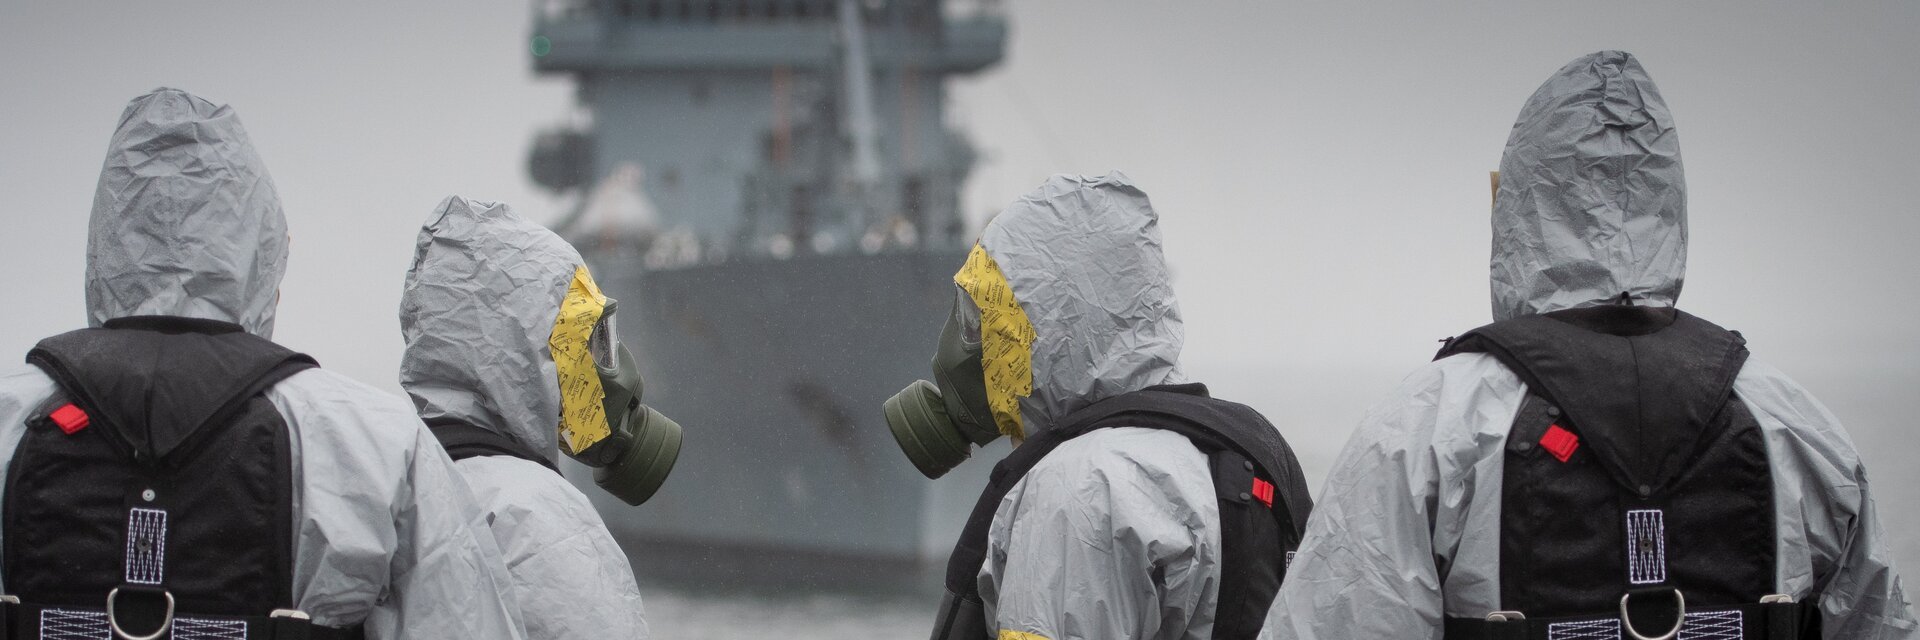 Soldaten der ABC Abwehrtruppe stehen in Schutzkleidung vor einem Schiff